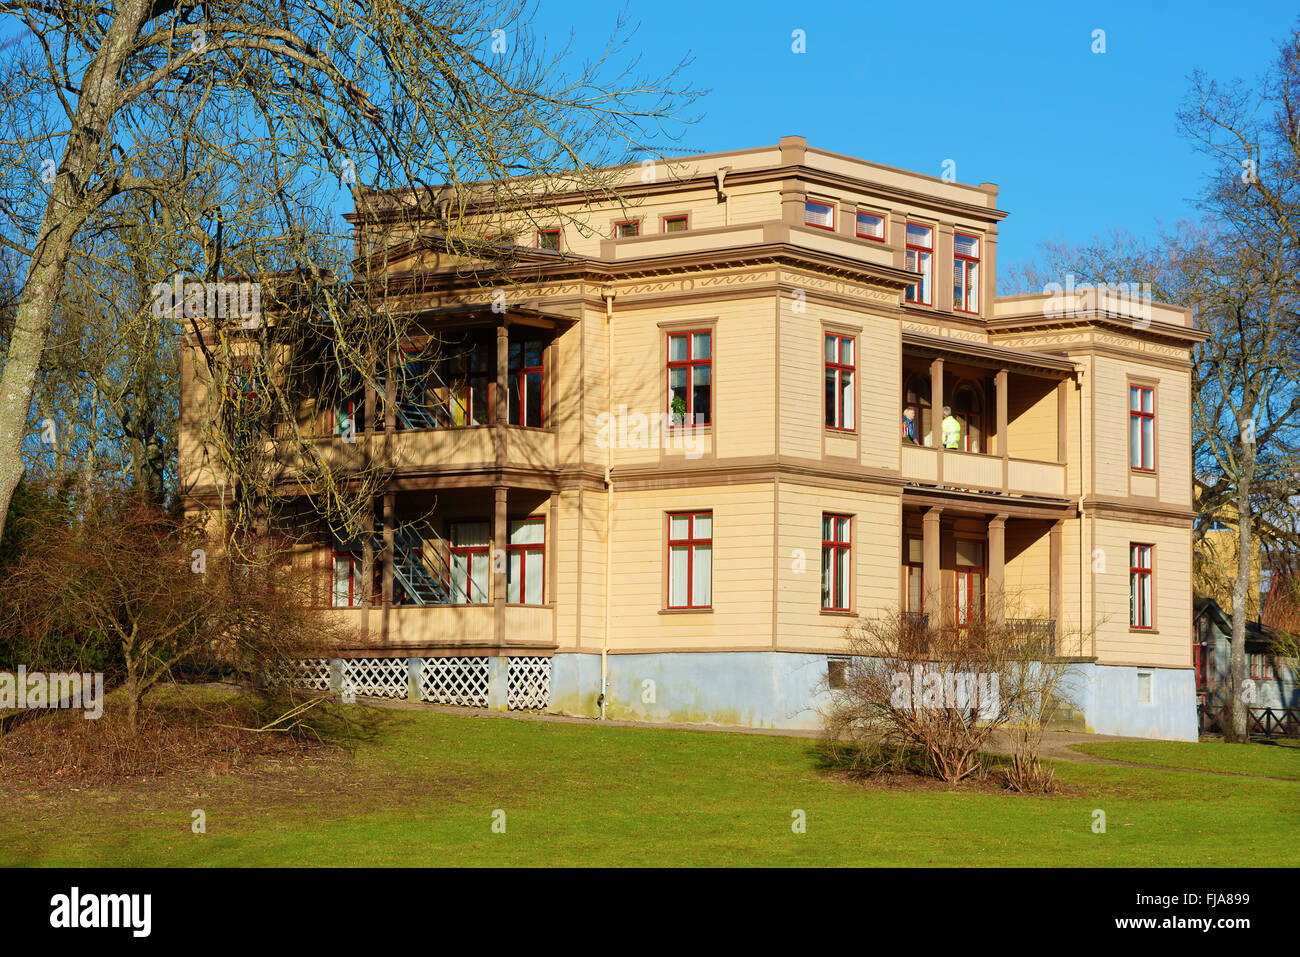 Ronneby, Suède - Février 26, 2016 : La villa est un bâtiment historique classé datant de 1881, construit pour accueillir les clients riches Banque D'Images